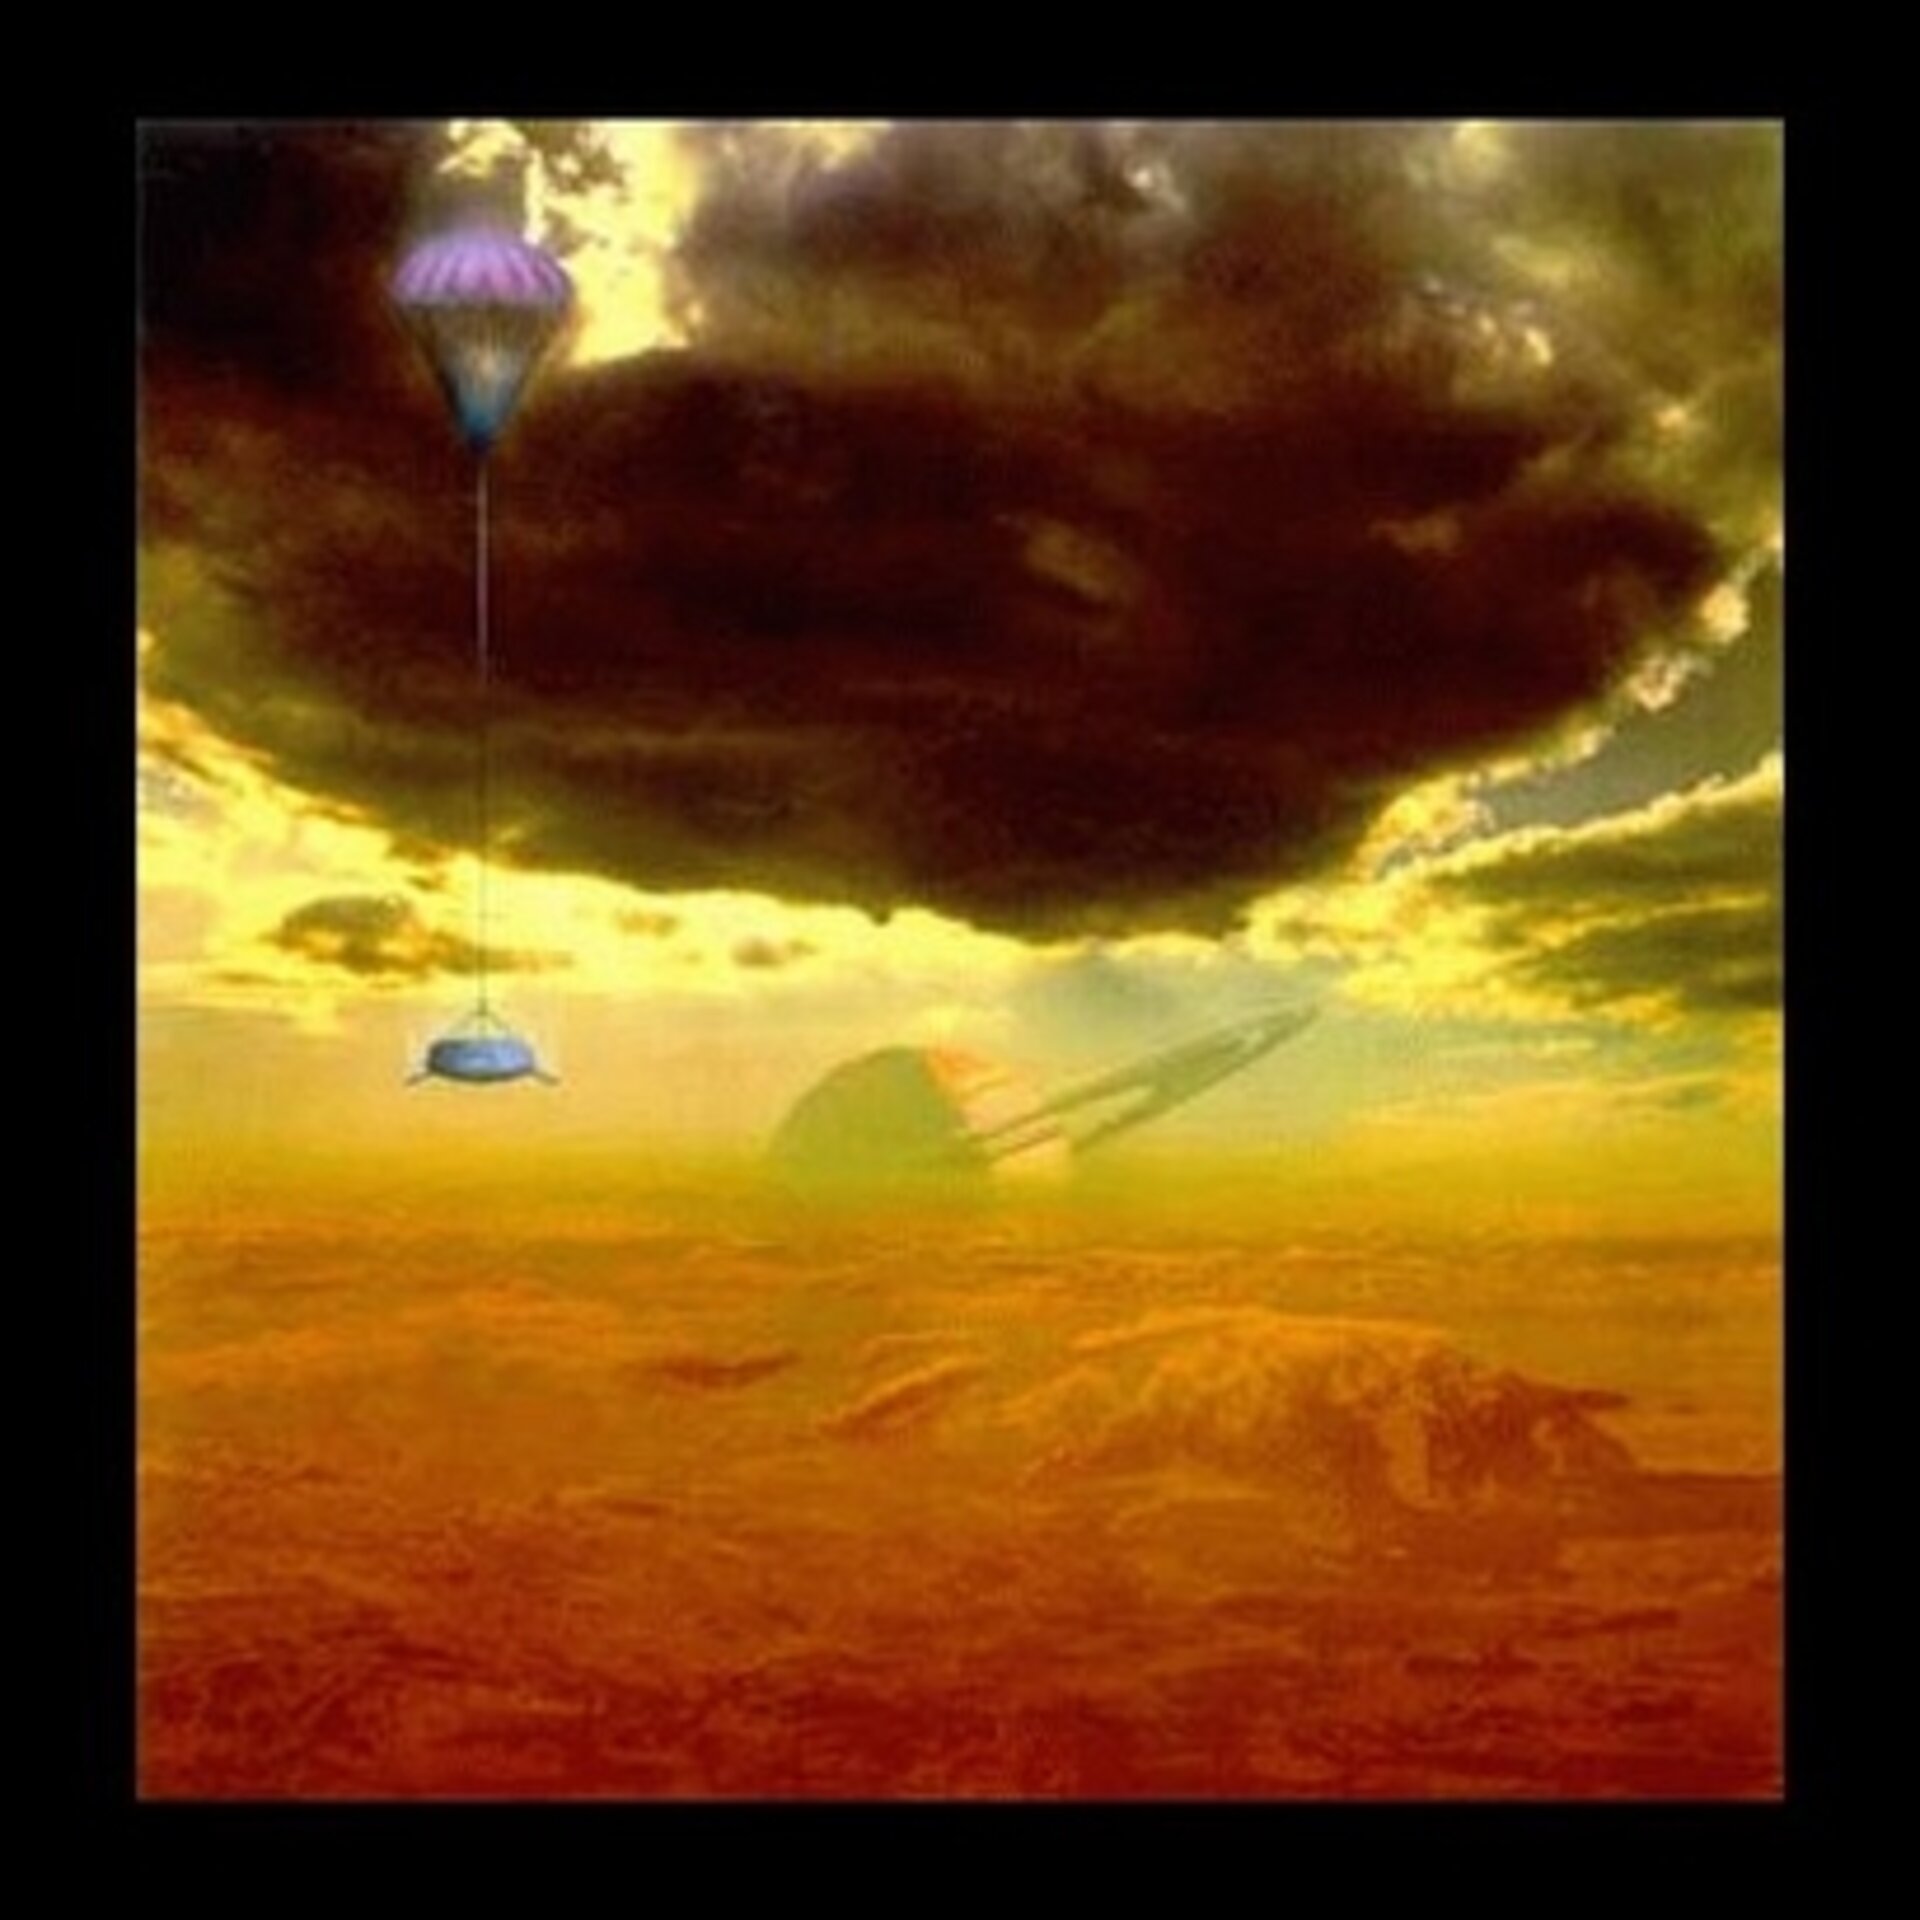 Saturne dans le ciel de Titan